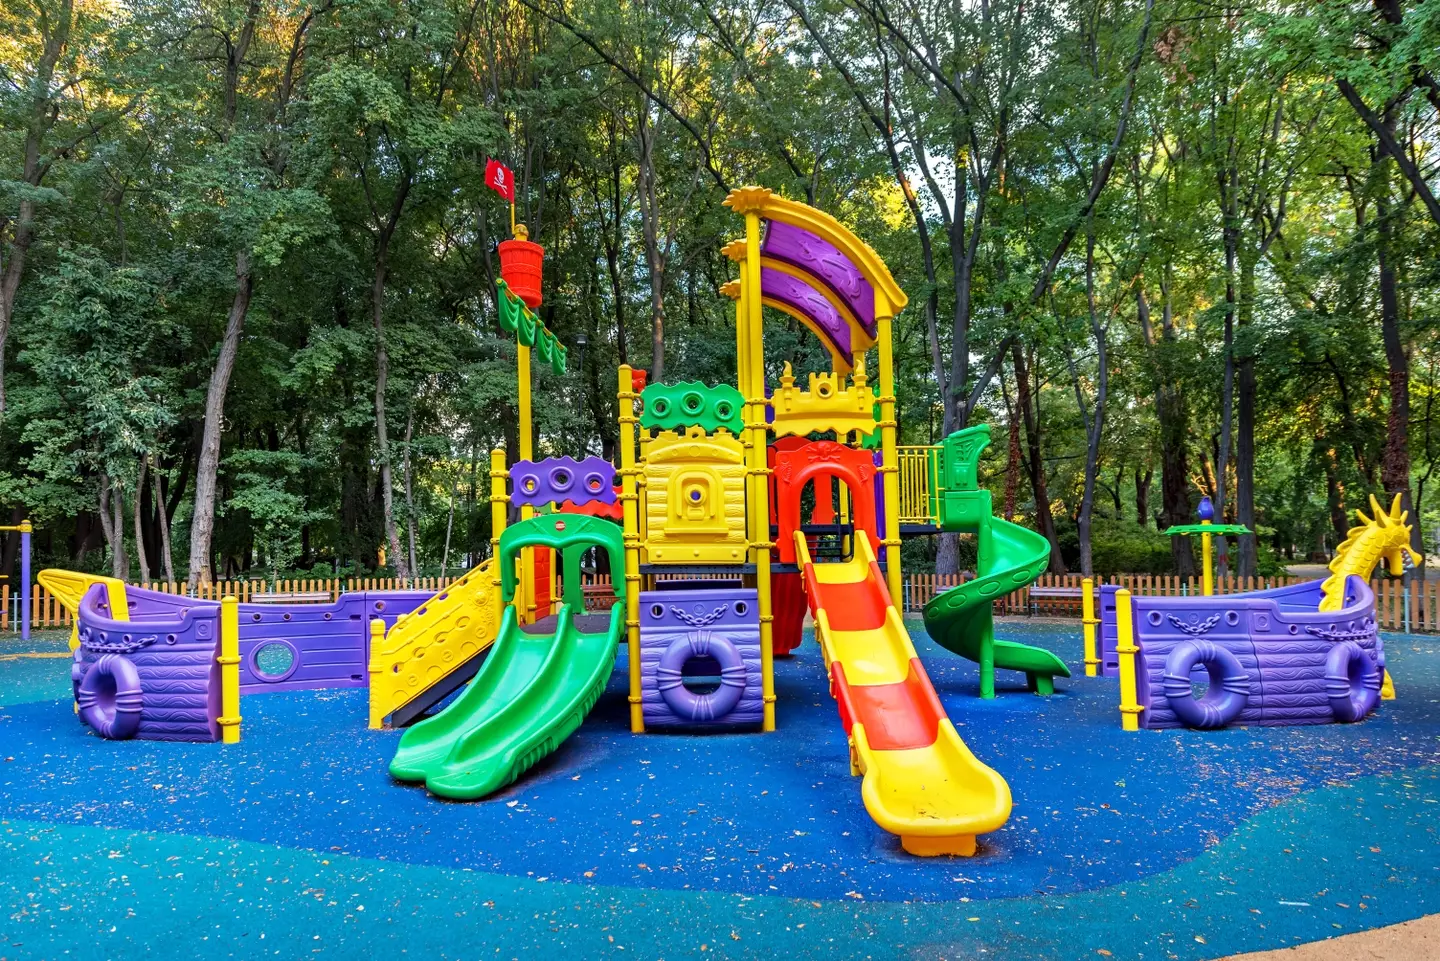 A children's playground.